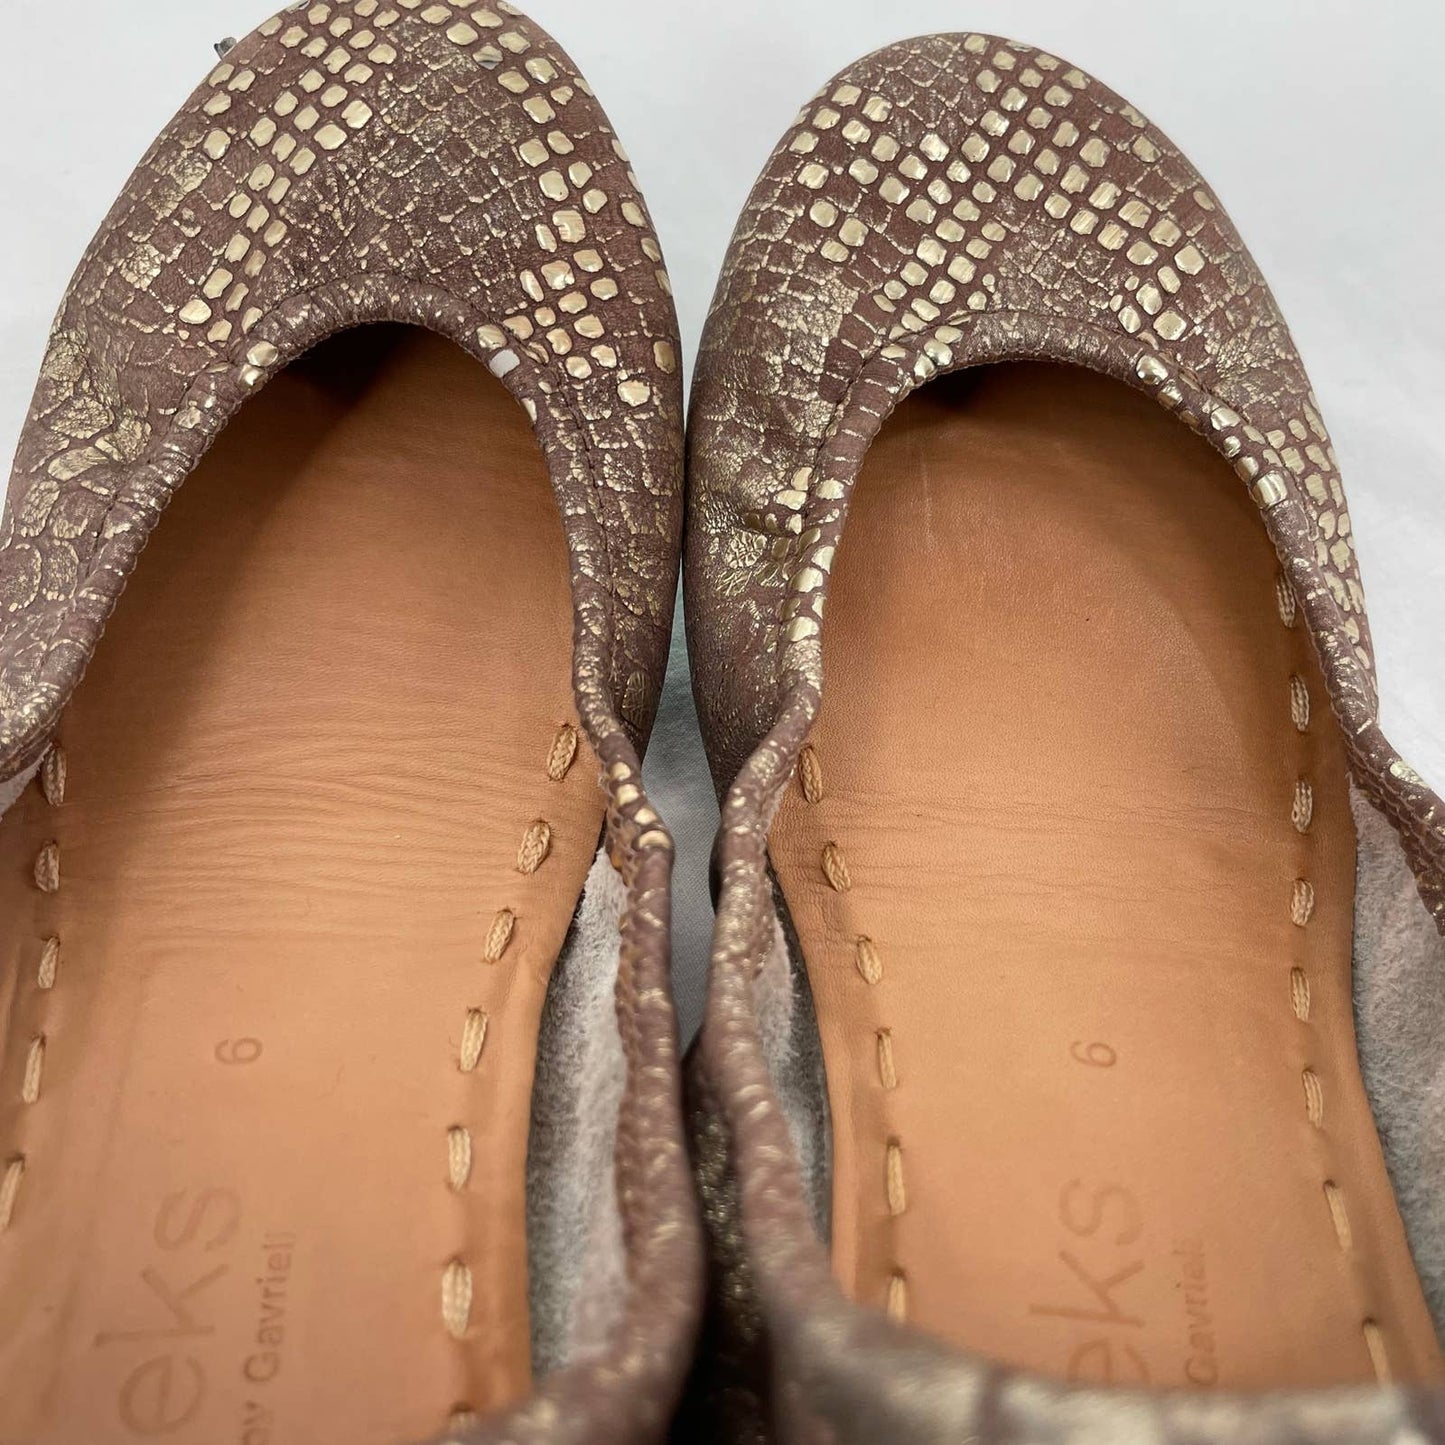 Tieks Wild Copper Leather Ballet Flats Gold Snakeskin Python Shiny Metallic Foil Size 6